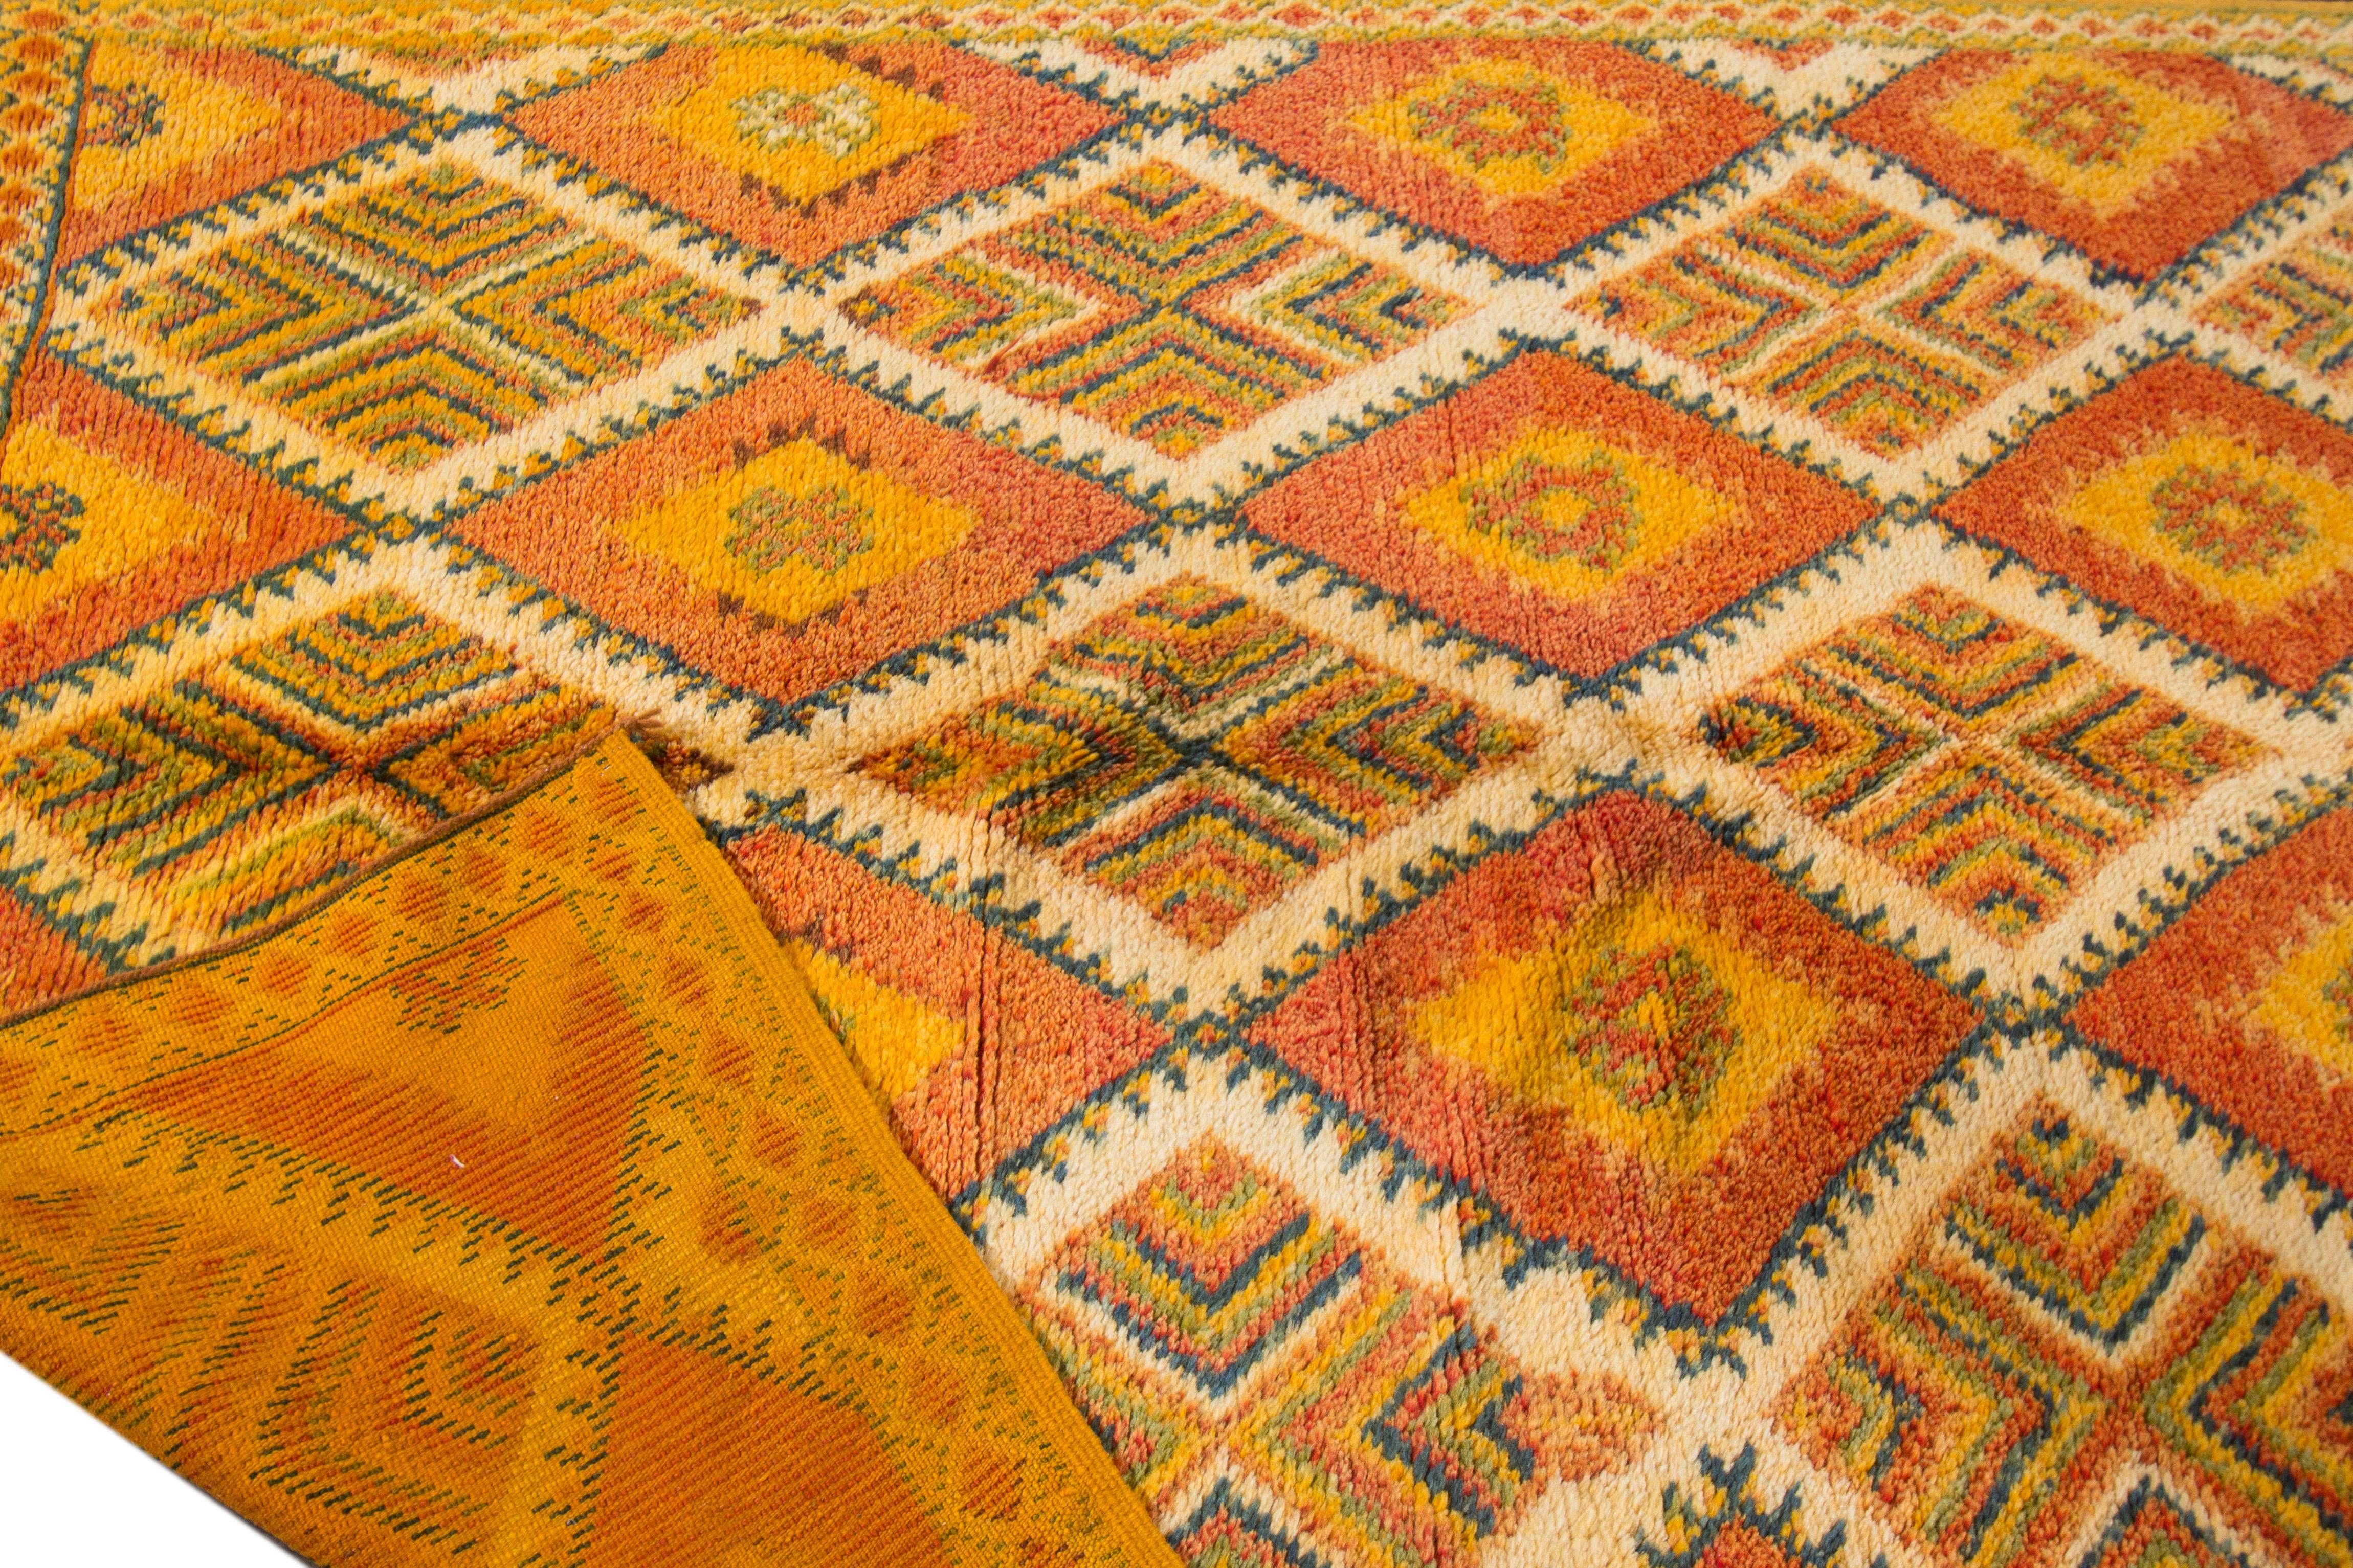 Schöner marokkanischer handgeknüpfter Wollteppich im Vintage-Stil mit orangefarbenem Feld. Dieser marokkanische Teppich hat grüne, gelbe und blaue Akzente in einem prächtigen geometrischen Rautenmuster. 

Dieser Teppich misst 5' x 11'6